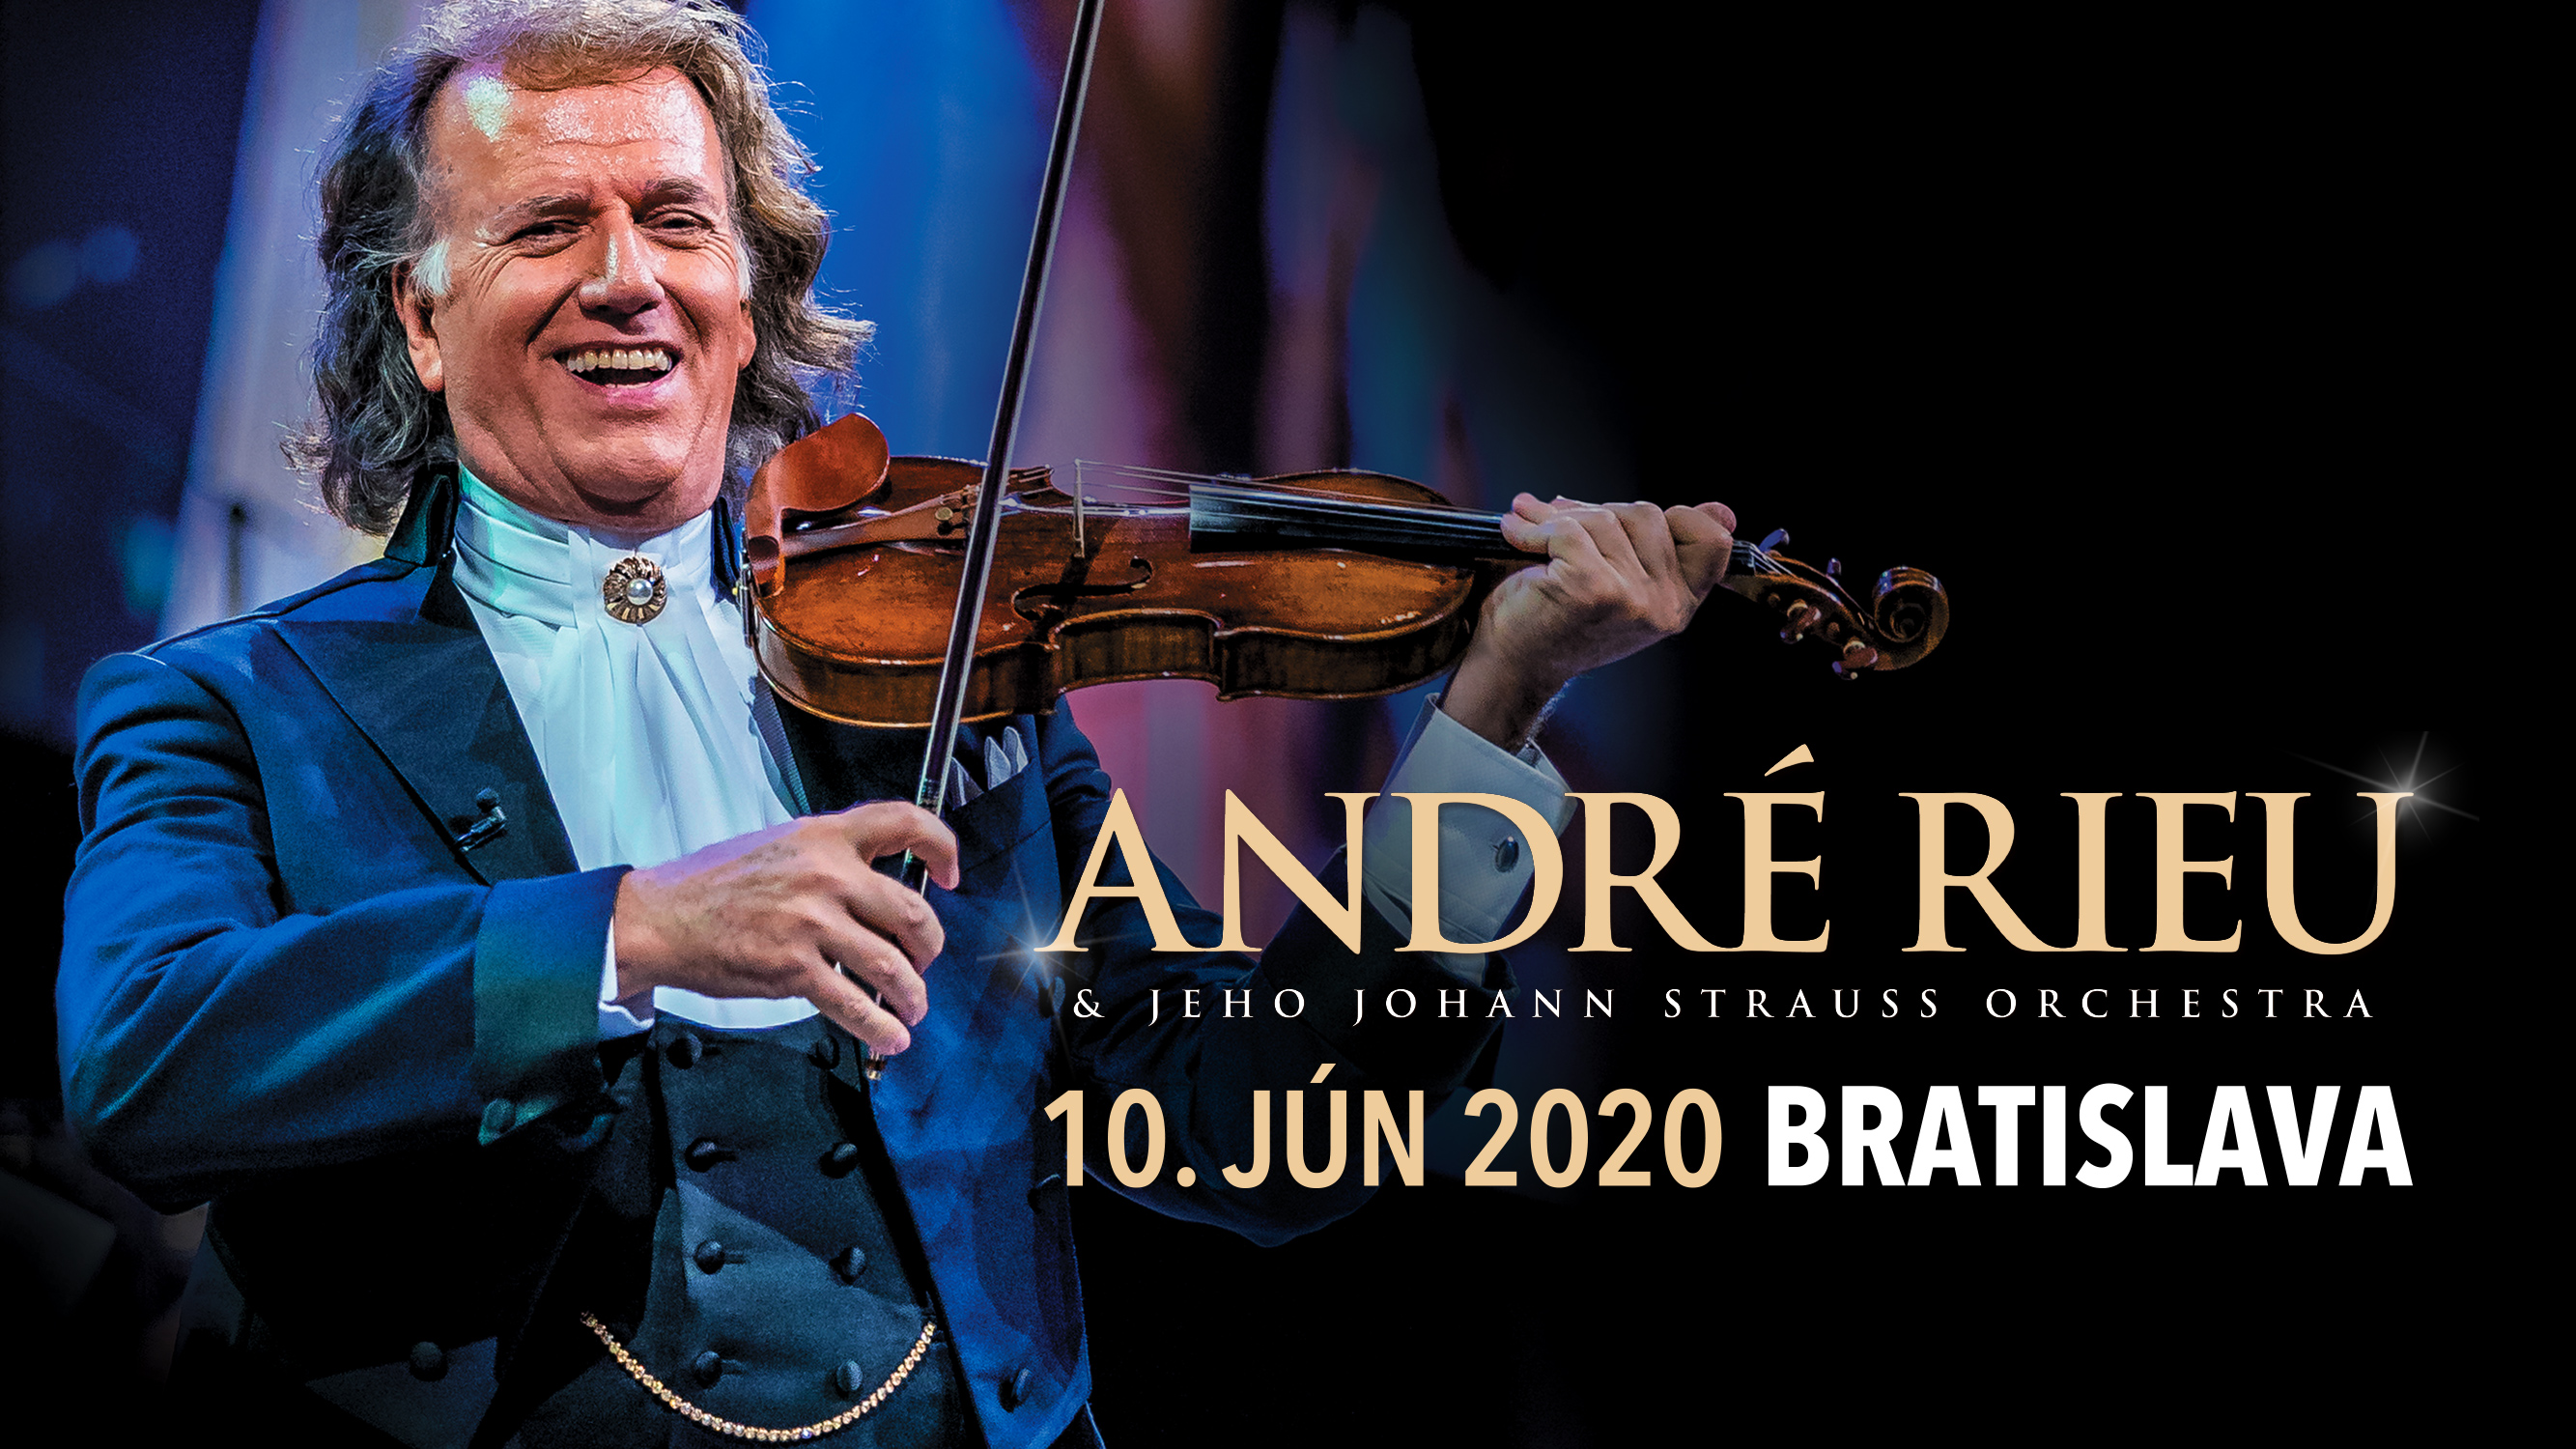 André Rieu mieri na Slovensko! Po boku Johann Strauss Orchestra ponúkne publiku žánrovú všehochuť